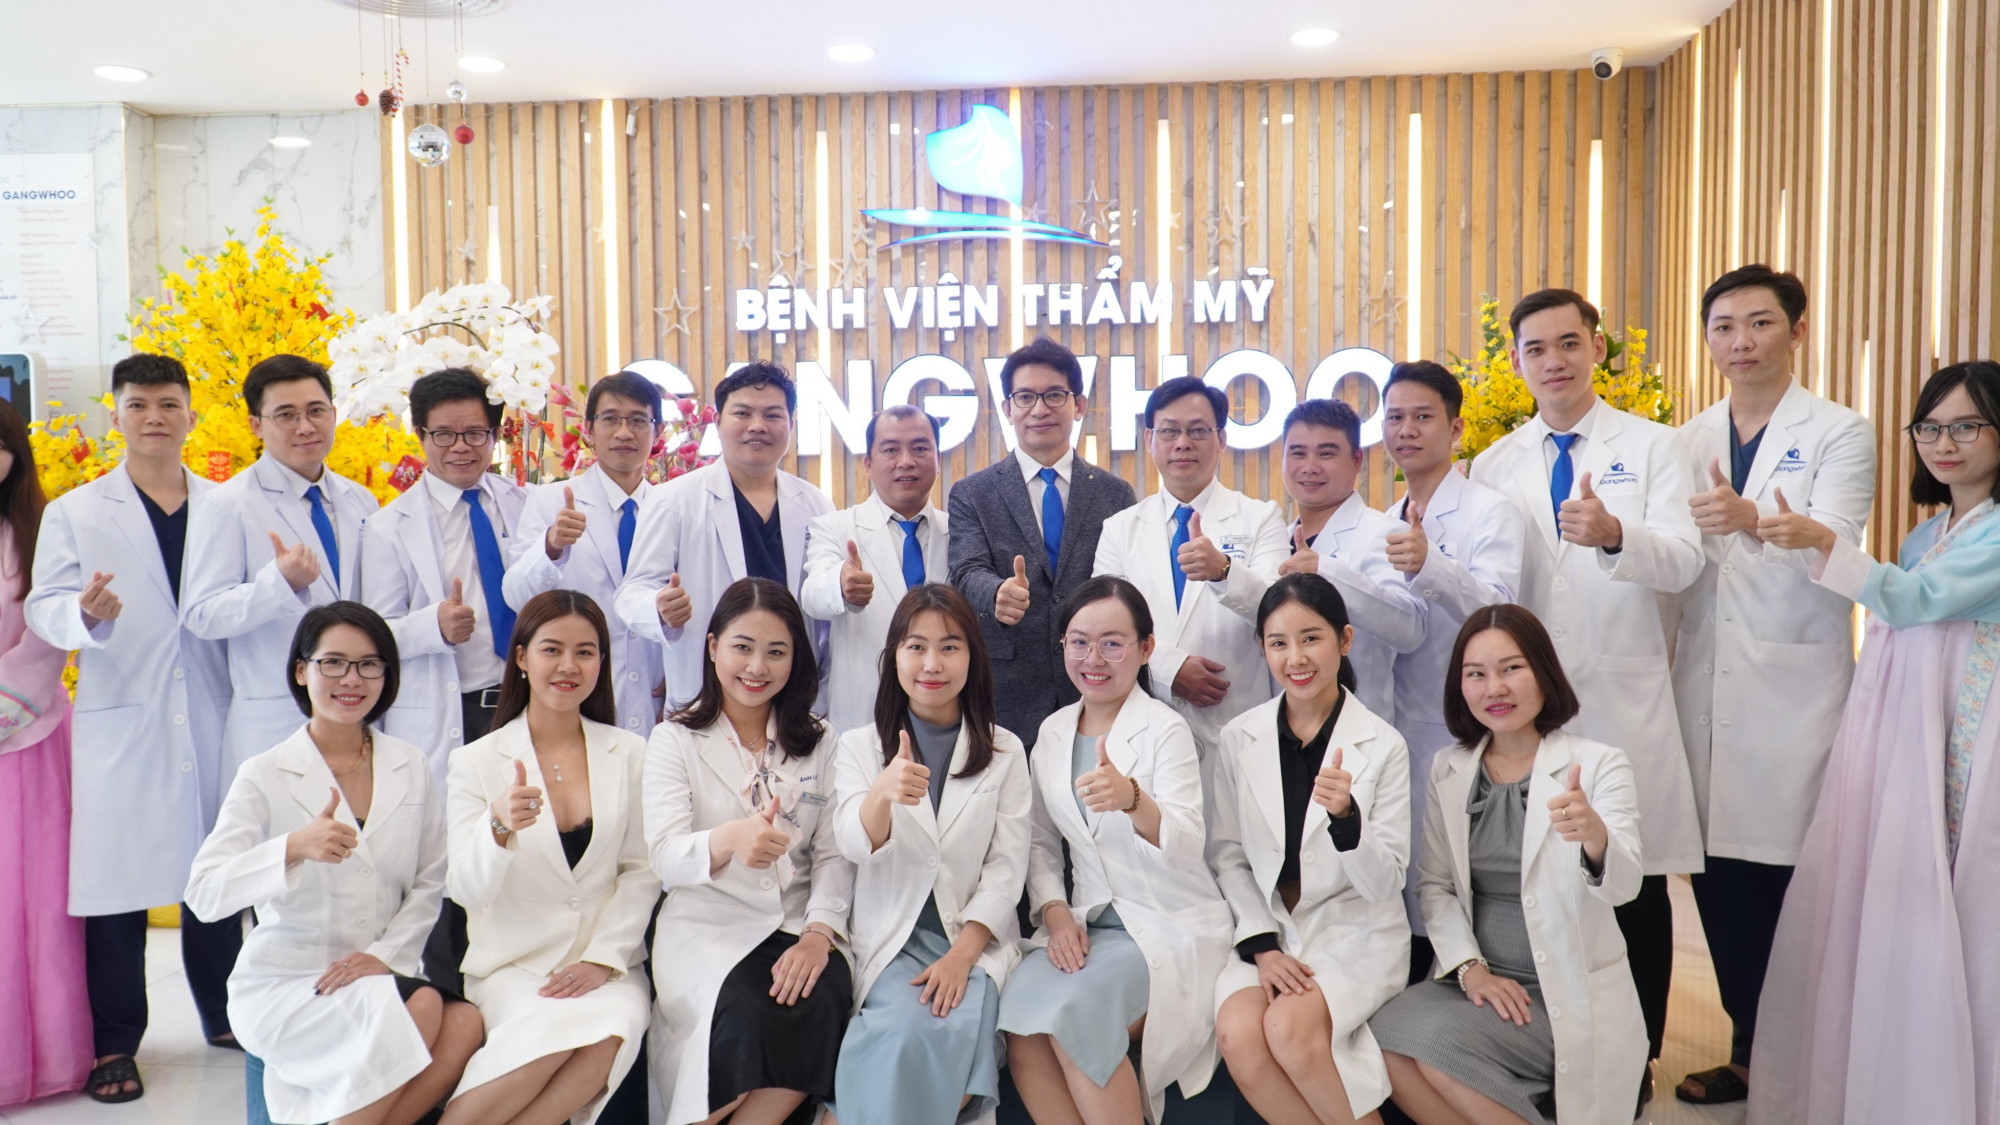 Đội ngũ y bác sĩ Bệnh viện thẩm mỹ Gangwhoo - Ảnh chụp trước tháng 4/2021